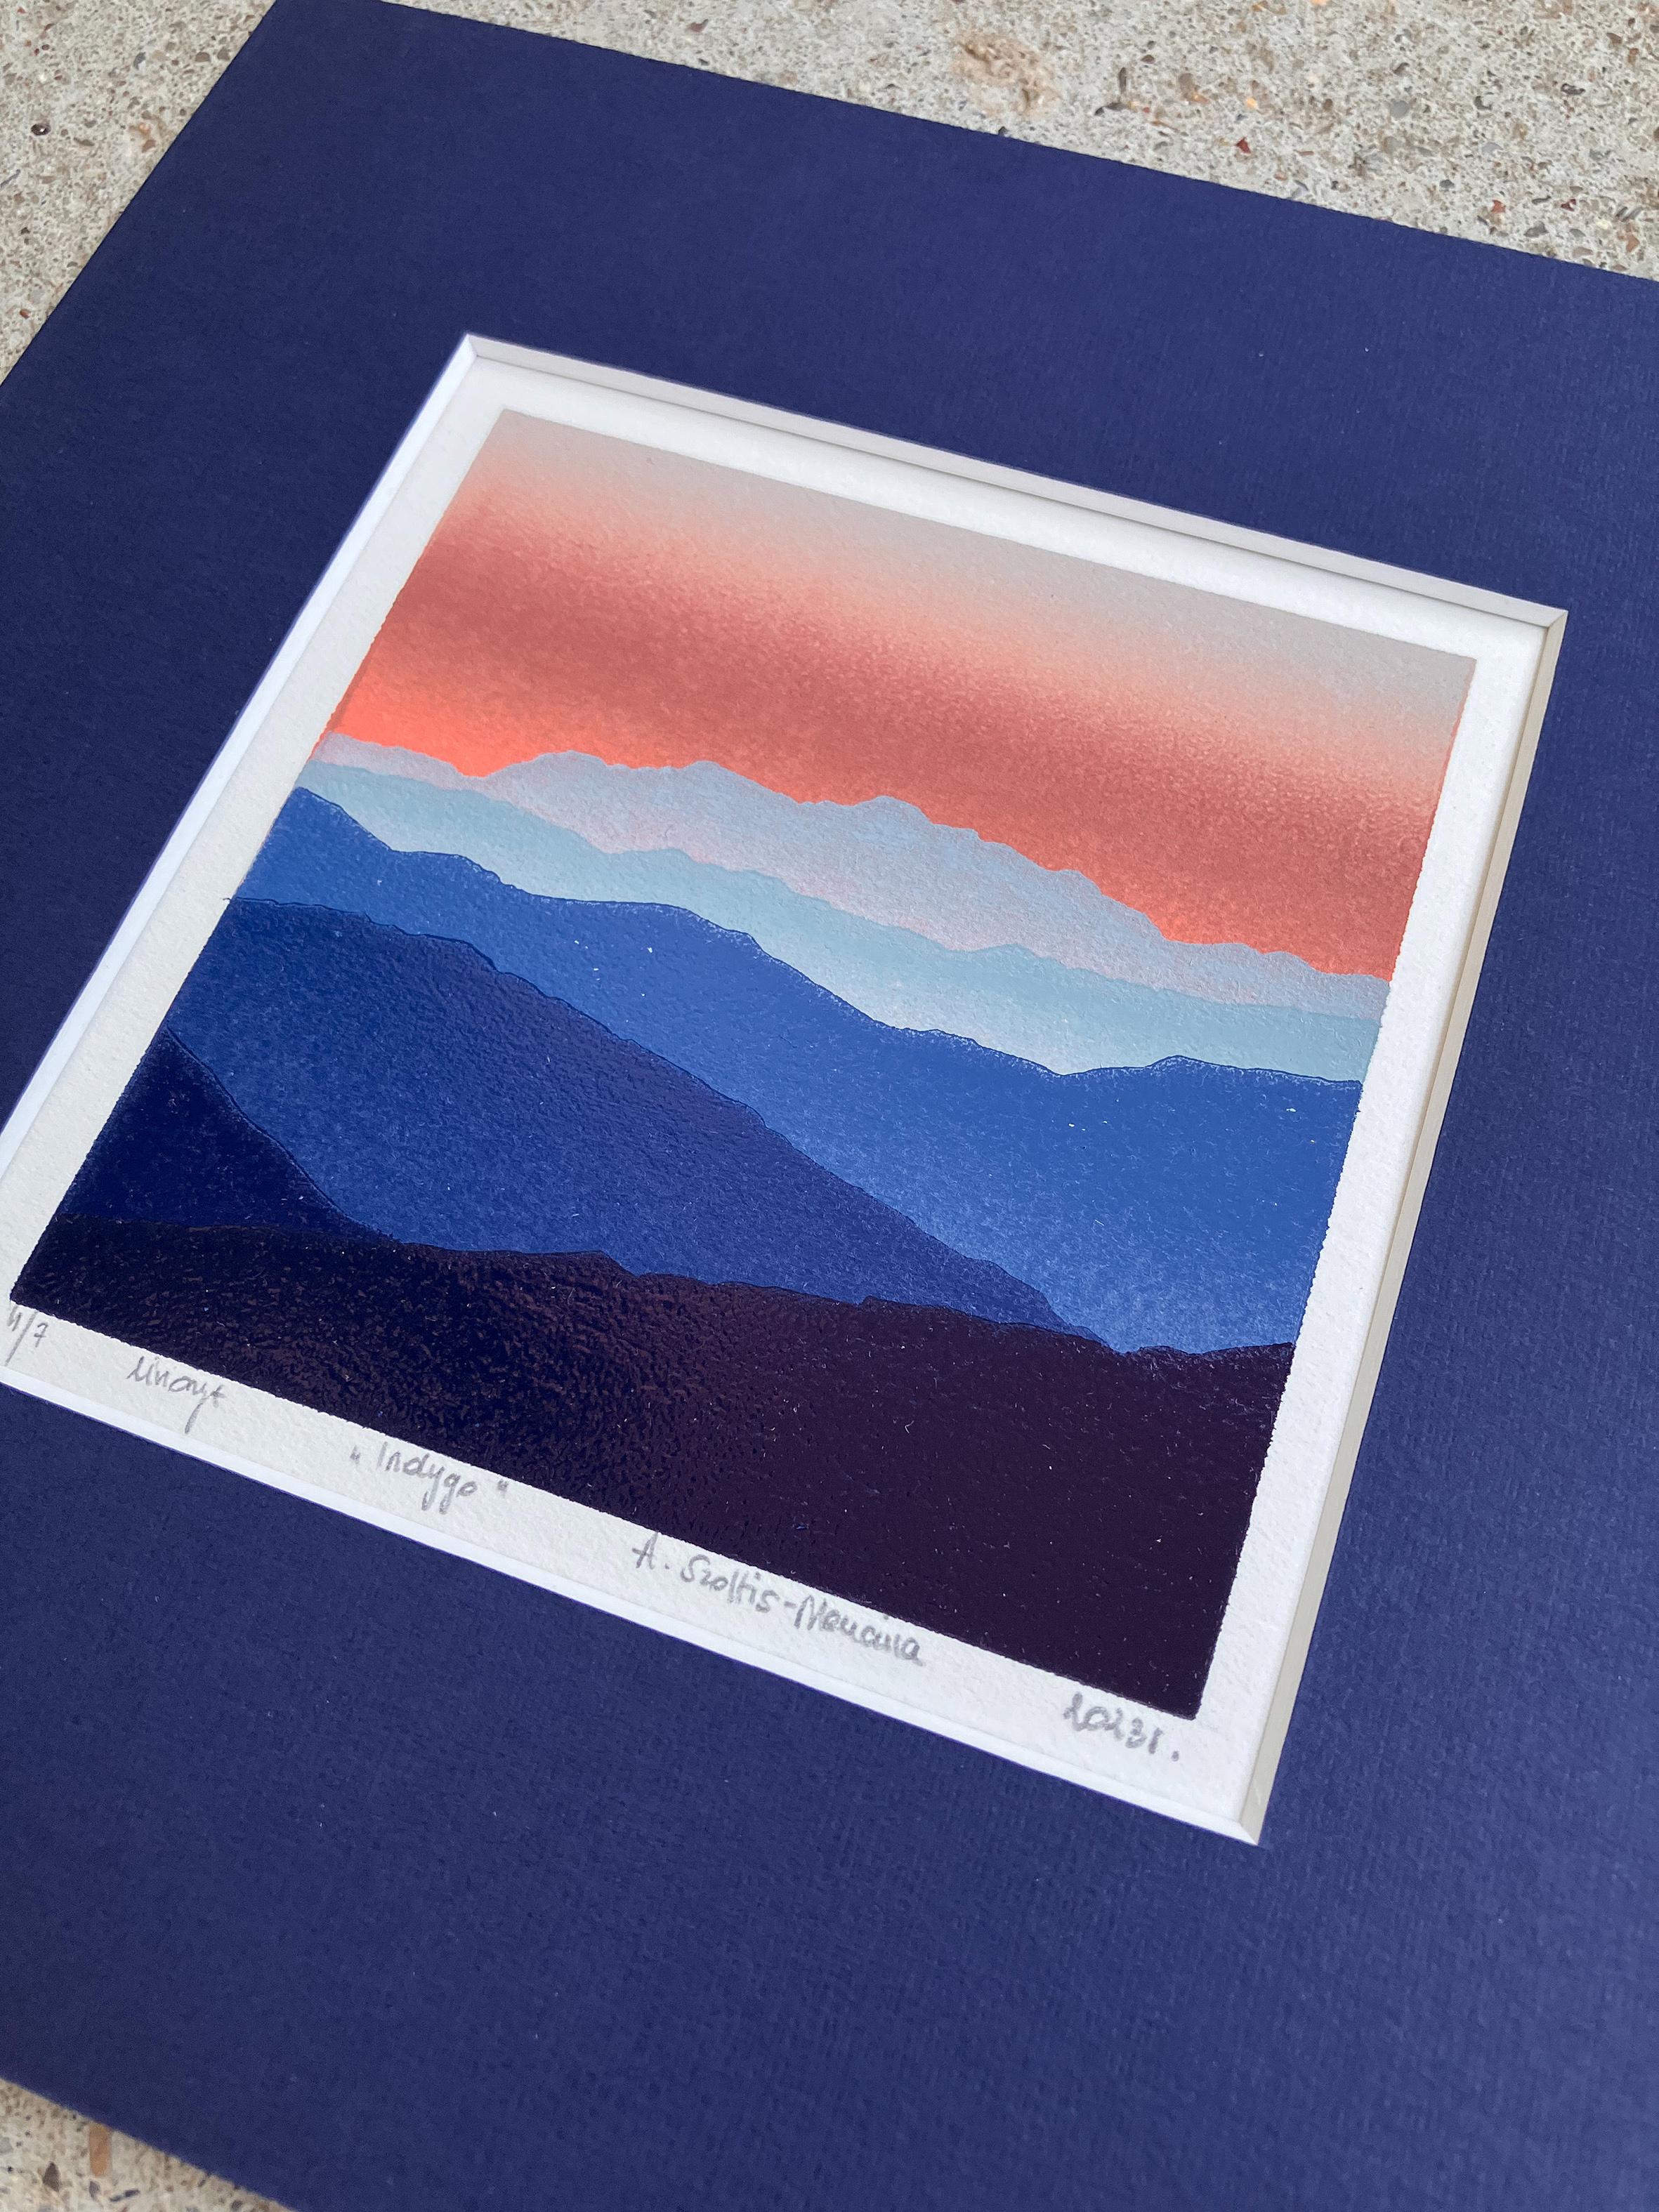 Indigo - Berge Landschaft, handgefertigt im Linoschliff  Limitierte Auflage Druck Einzigartig 4/7 (Violett), Landscape Print, von Aneta Szoltis-Mencina